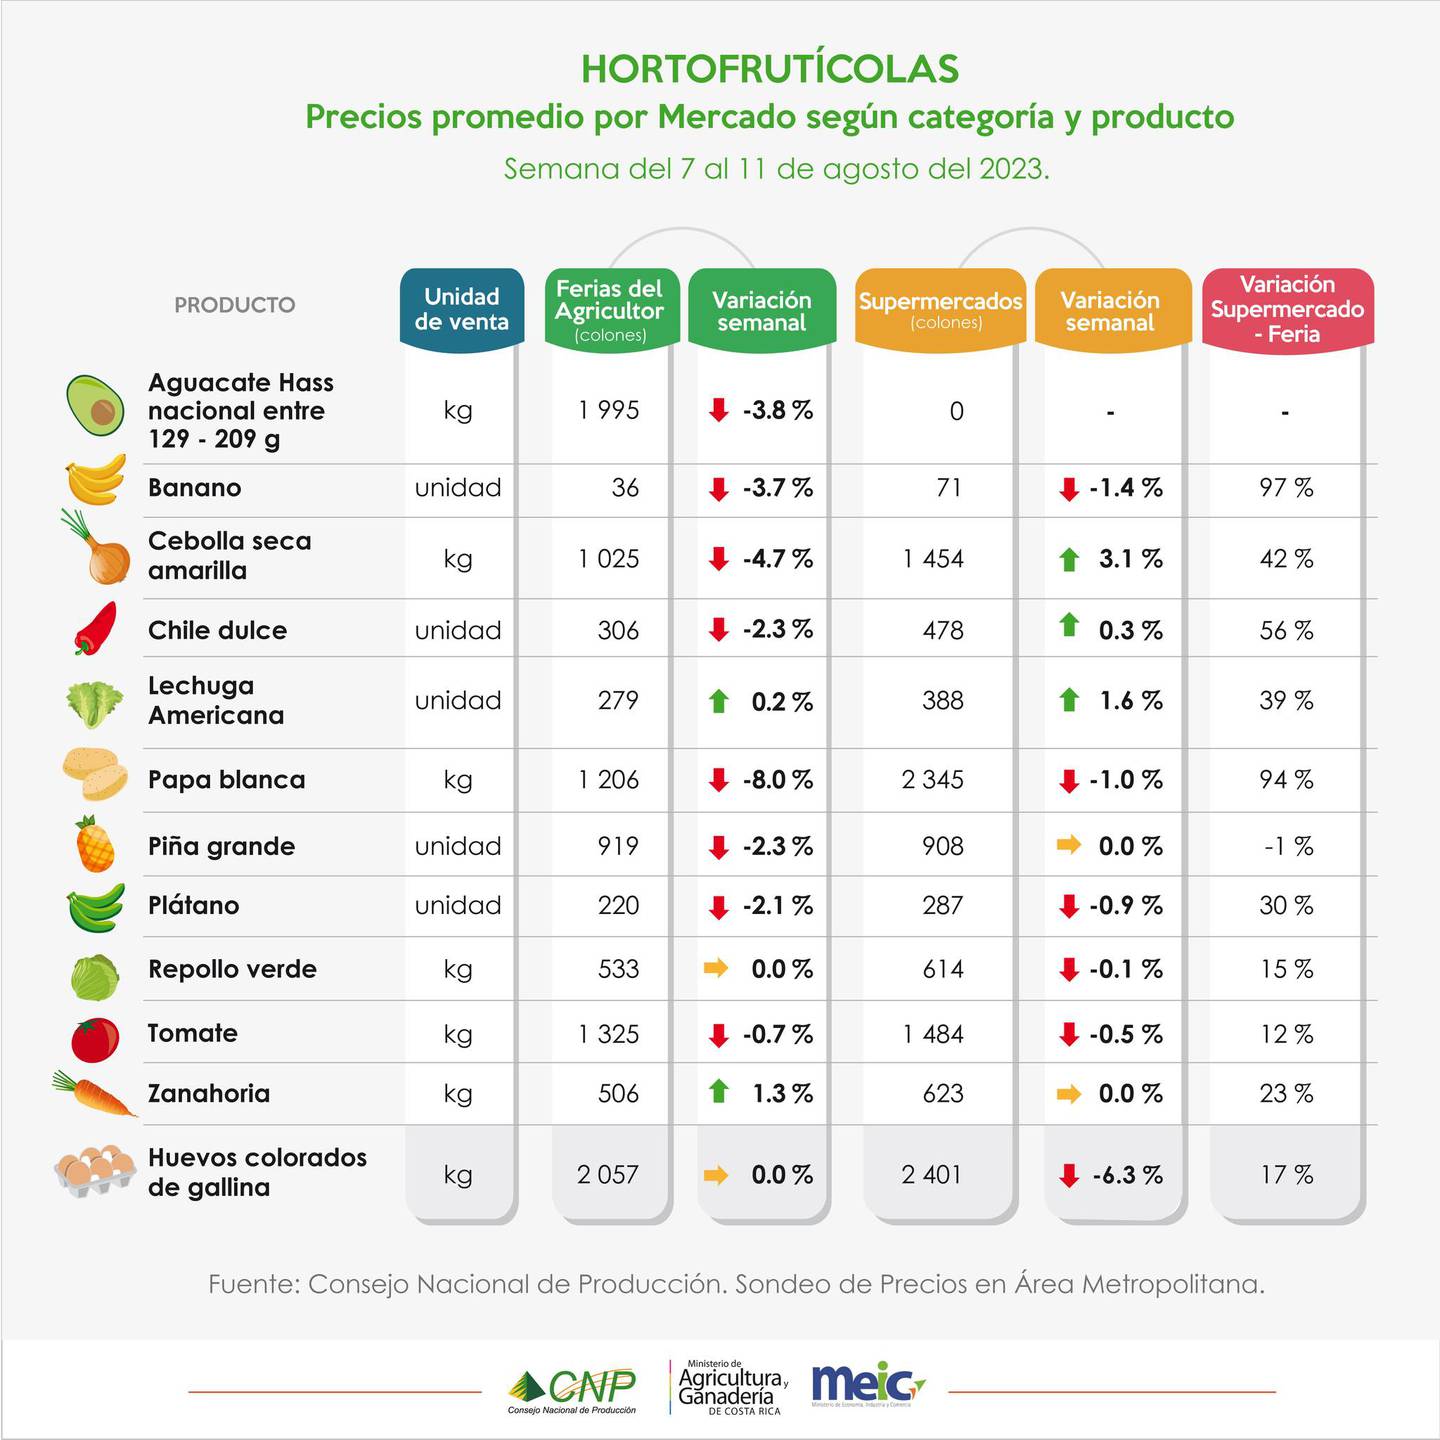 Precios en ferias, supermercados y carnicerías de acuerdo al MEIC y al CNP para el 18 de agosto del 2023